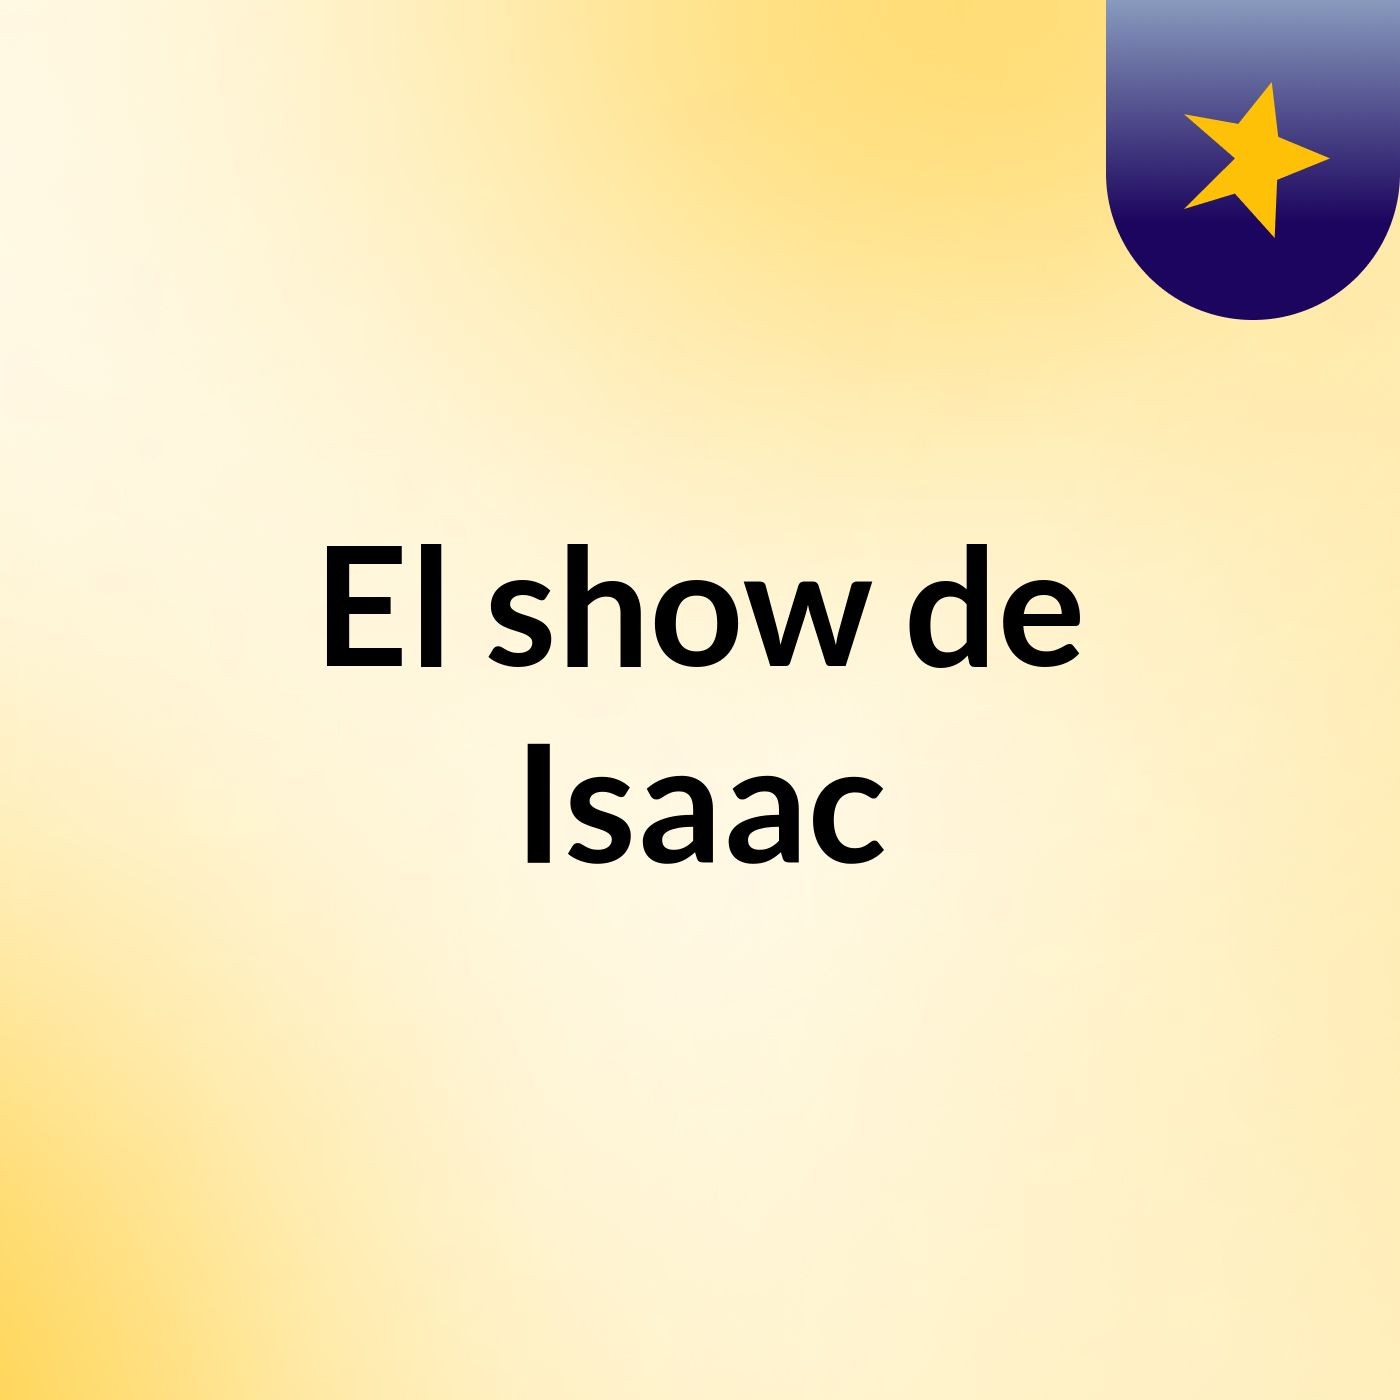 El show de Isaac